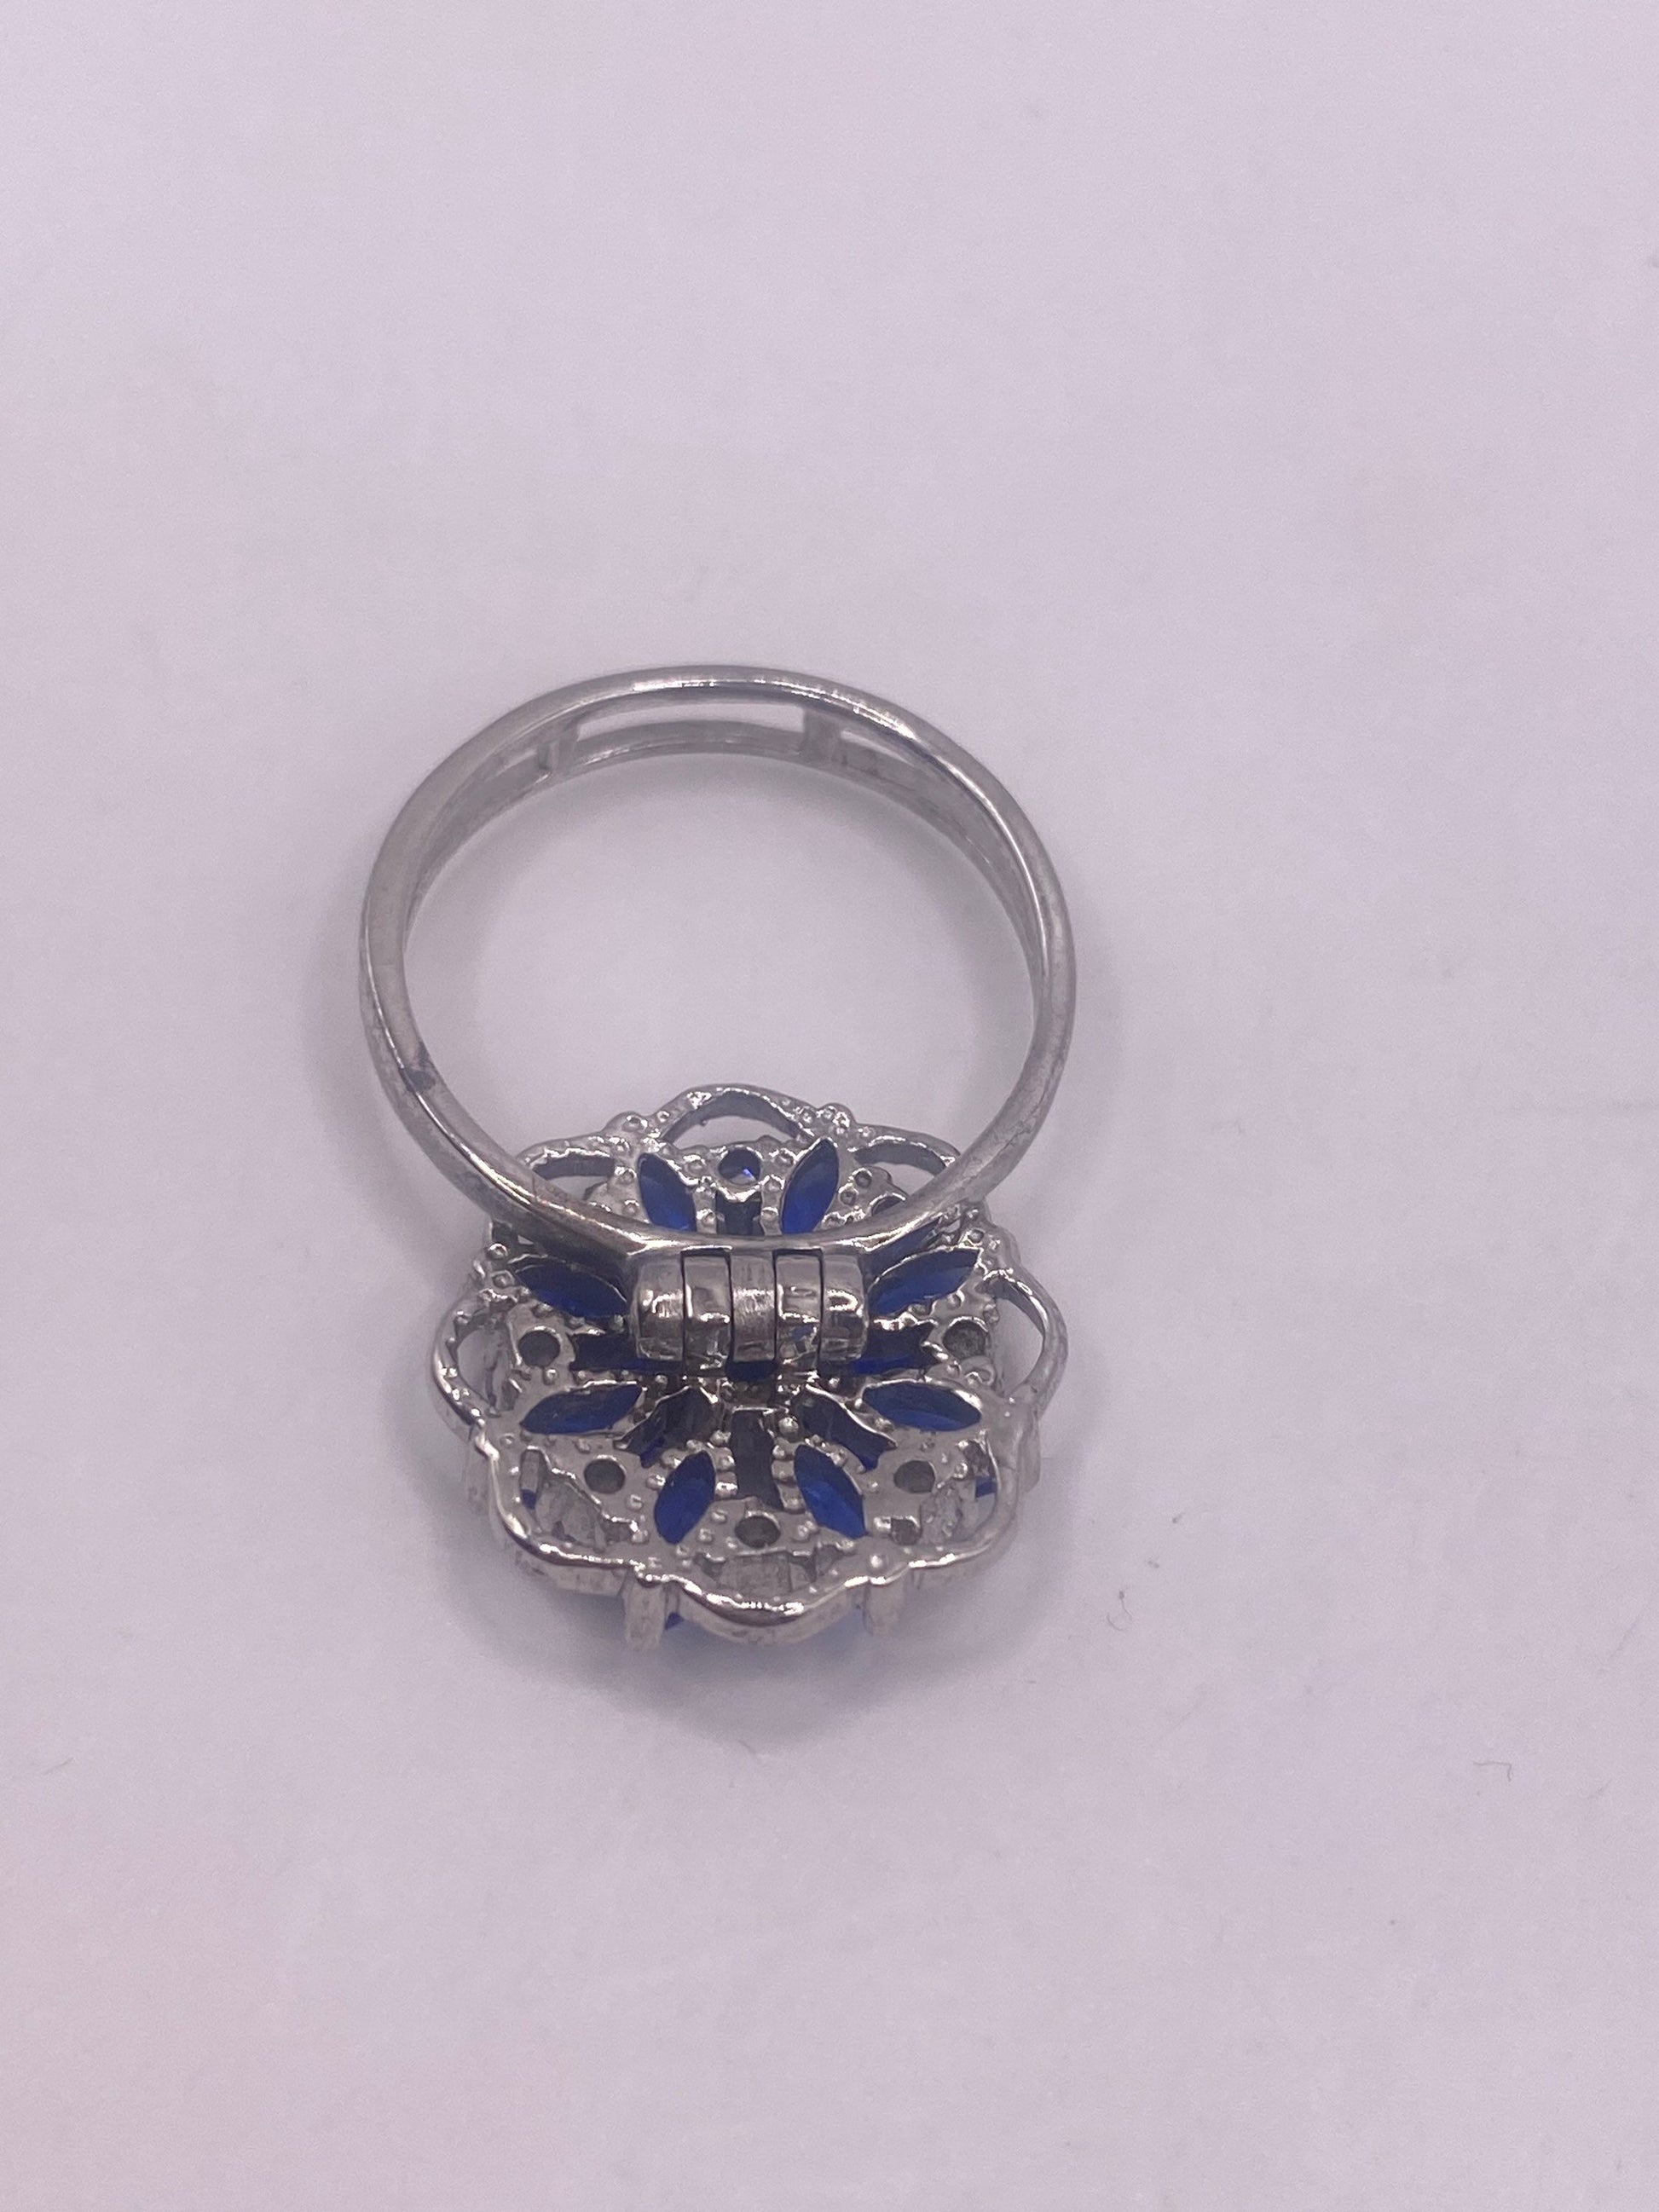 Vintage Blue Iolite 925 Sterling Silver Ring Size 7